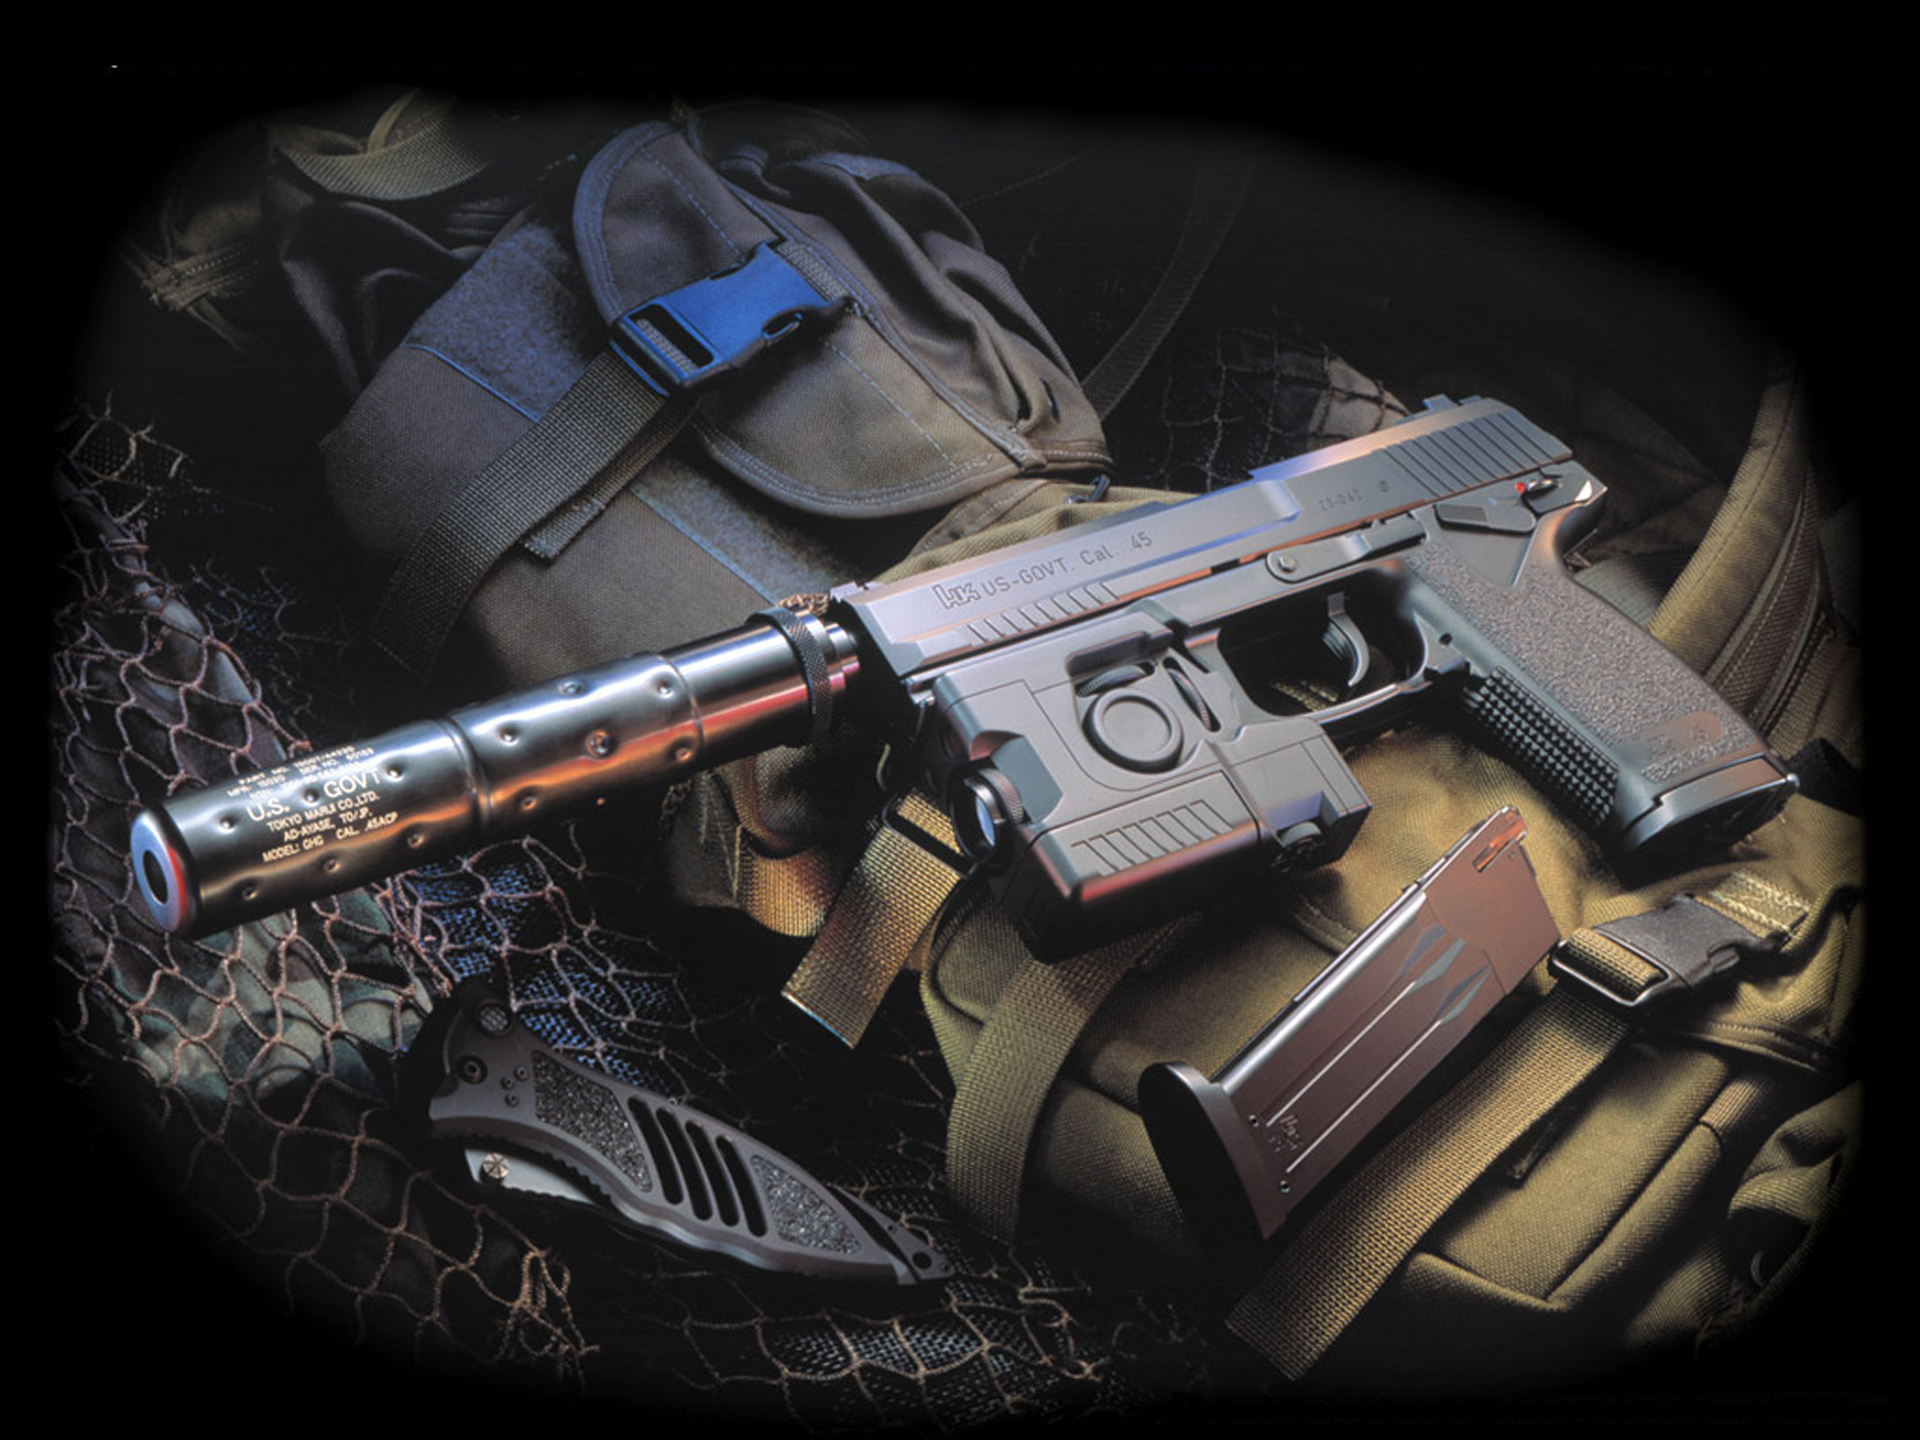 Man Made Heckler & Koch Pistol HD Wallpaper | Background Image